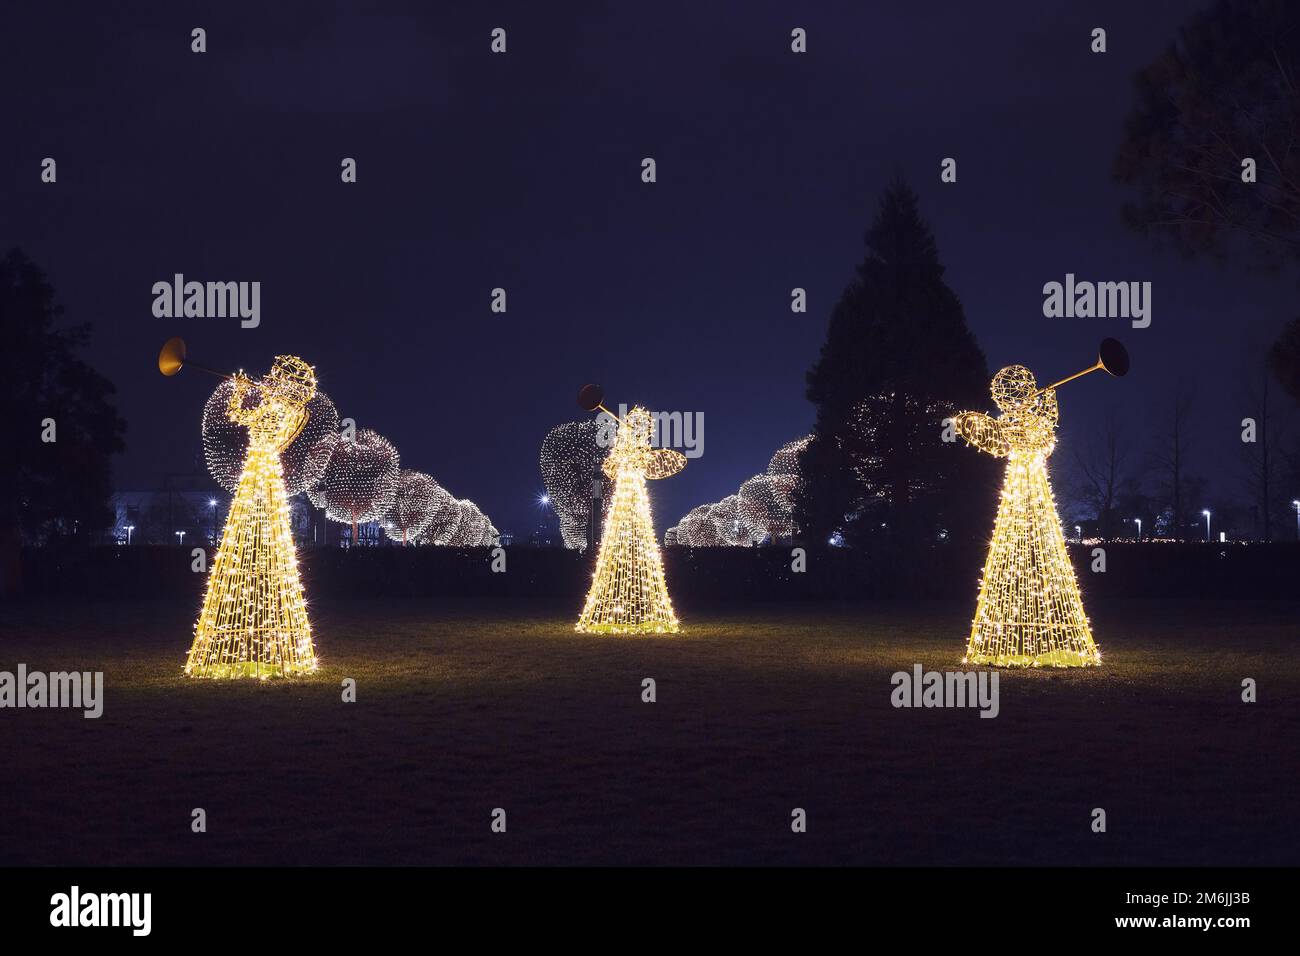 Drei Weihnachtsengel aus leuchtenden Girlanden beleuchten den Park mit seinen runden, leuchtenden Bäumen im n Stockfoto